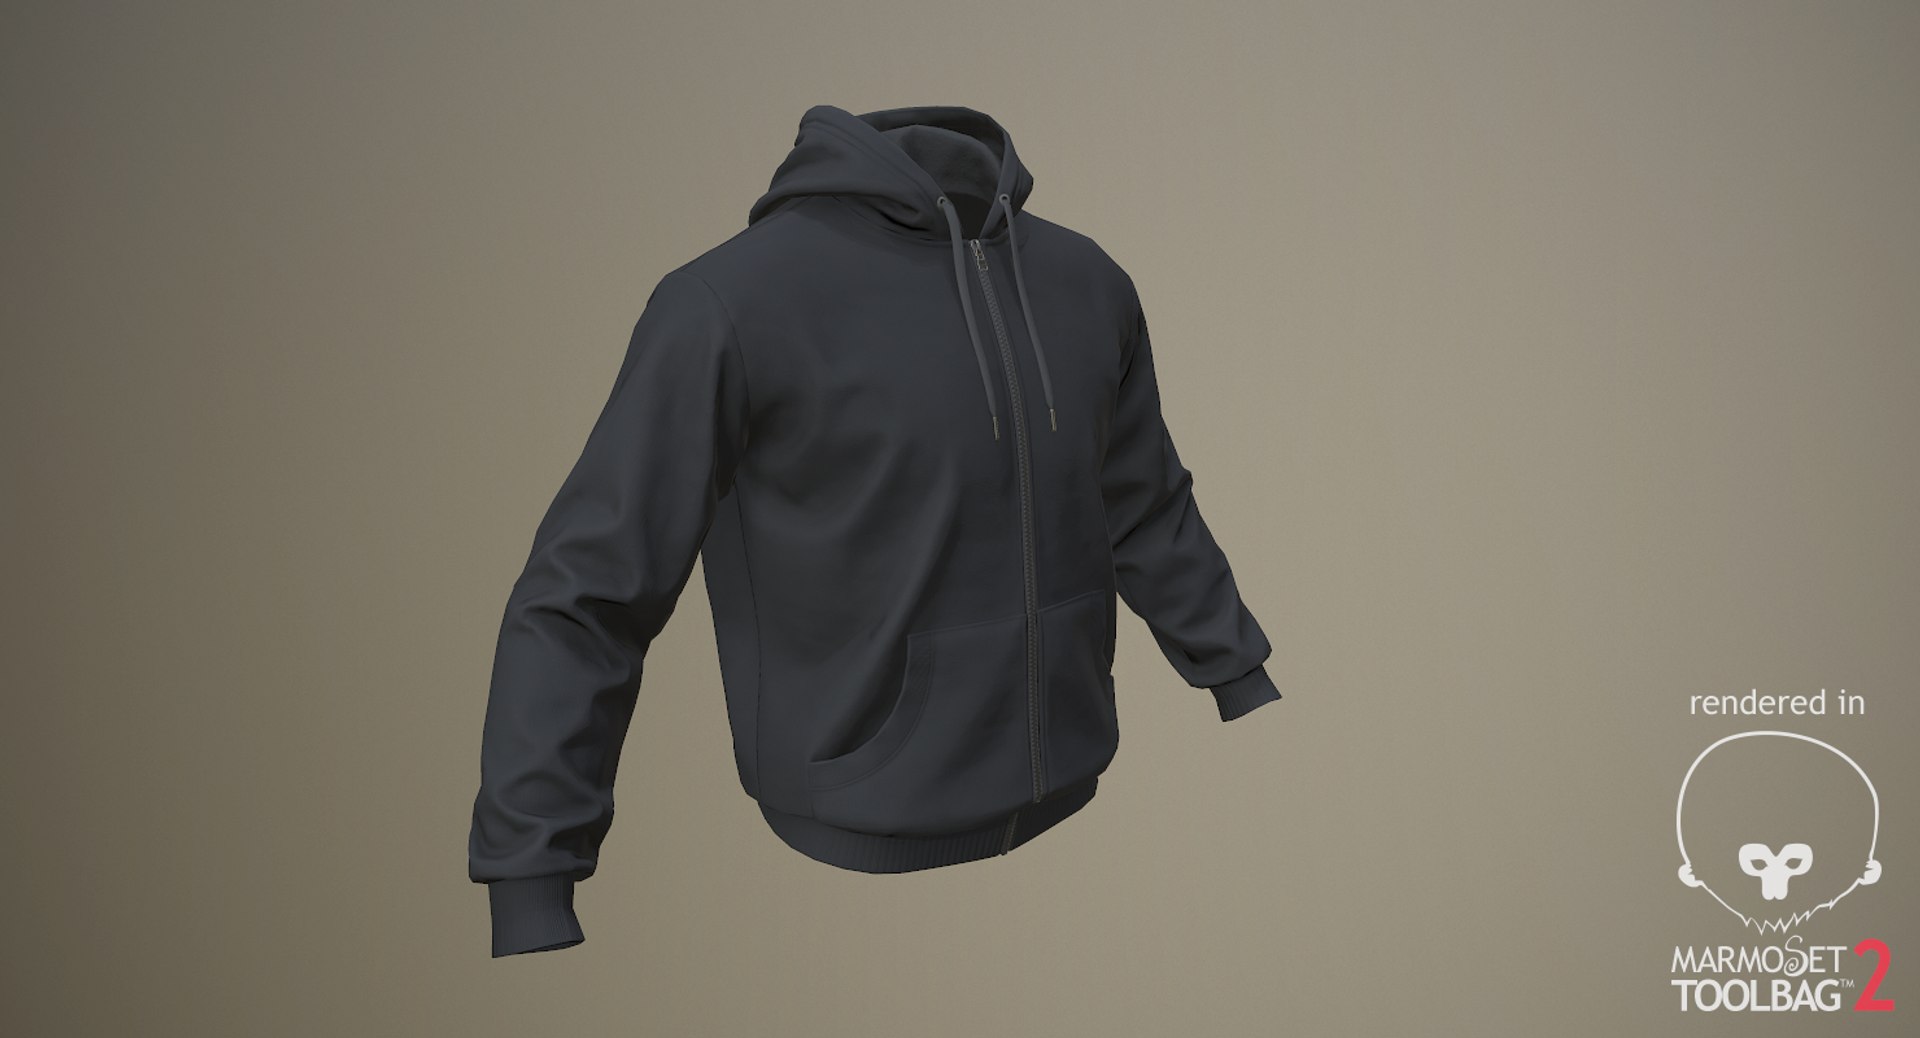 3D realistic black hoodie 02 model - TurboSquid 1299186